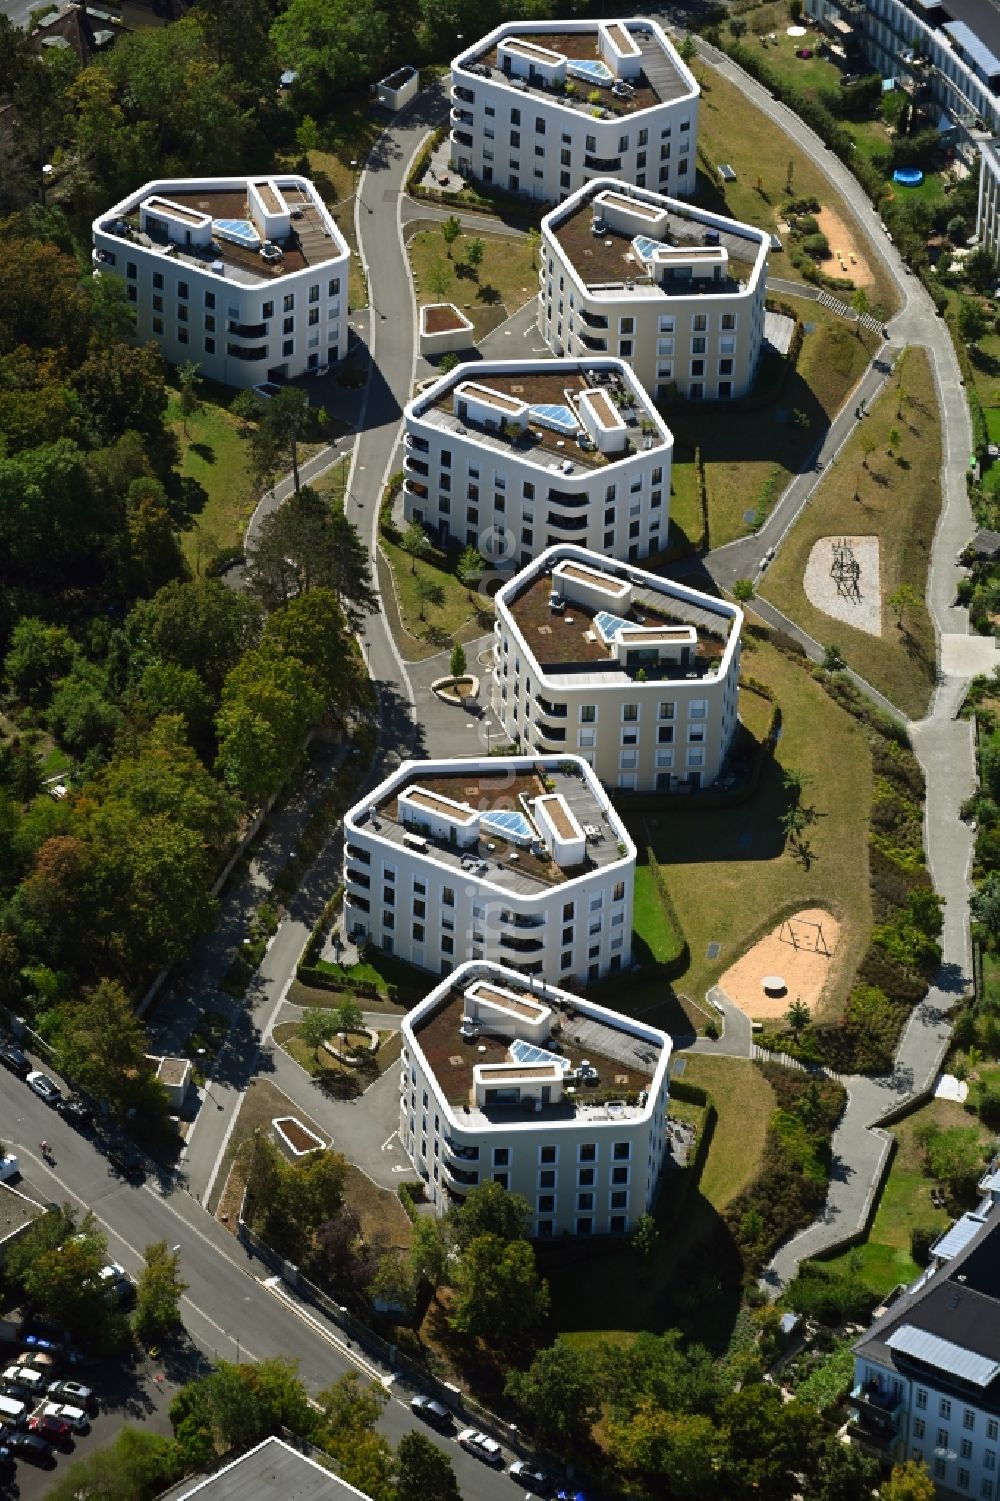 Luftbild Würzburg - Wohngebiet der Mehrfamilienhaussiedlung Wohnquartier Mönchberg im Ortsteil Frauenland in Würzburg im Bundesland Bayern, Deutschland